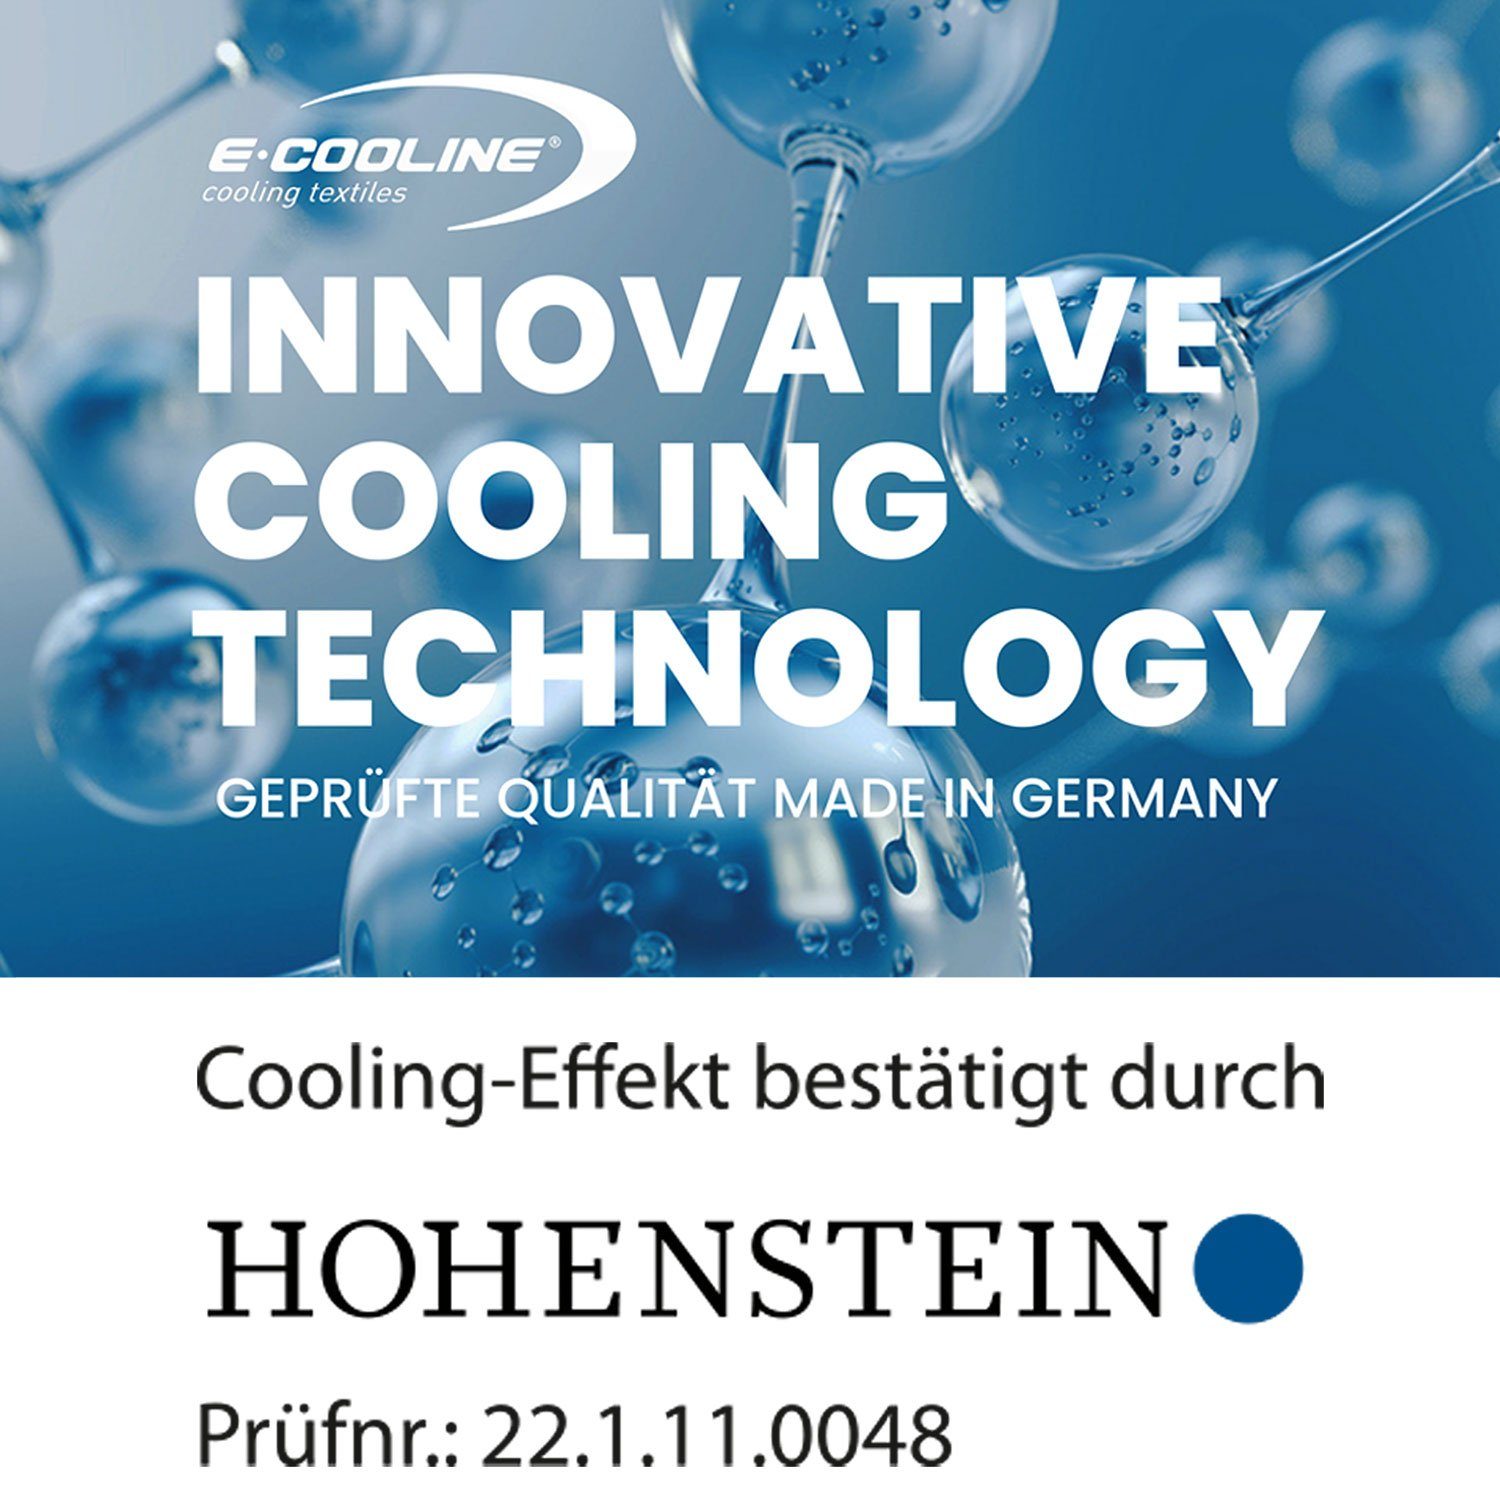 E.COOLINE Sonnenhut - kühlendes mit Aktivierung durch Sonnenschild kühlend Wasser Kühlung - Blau